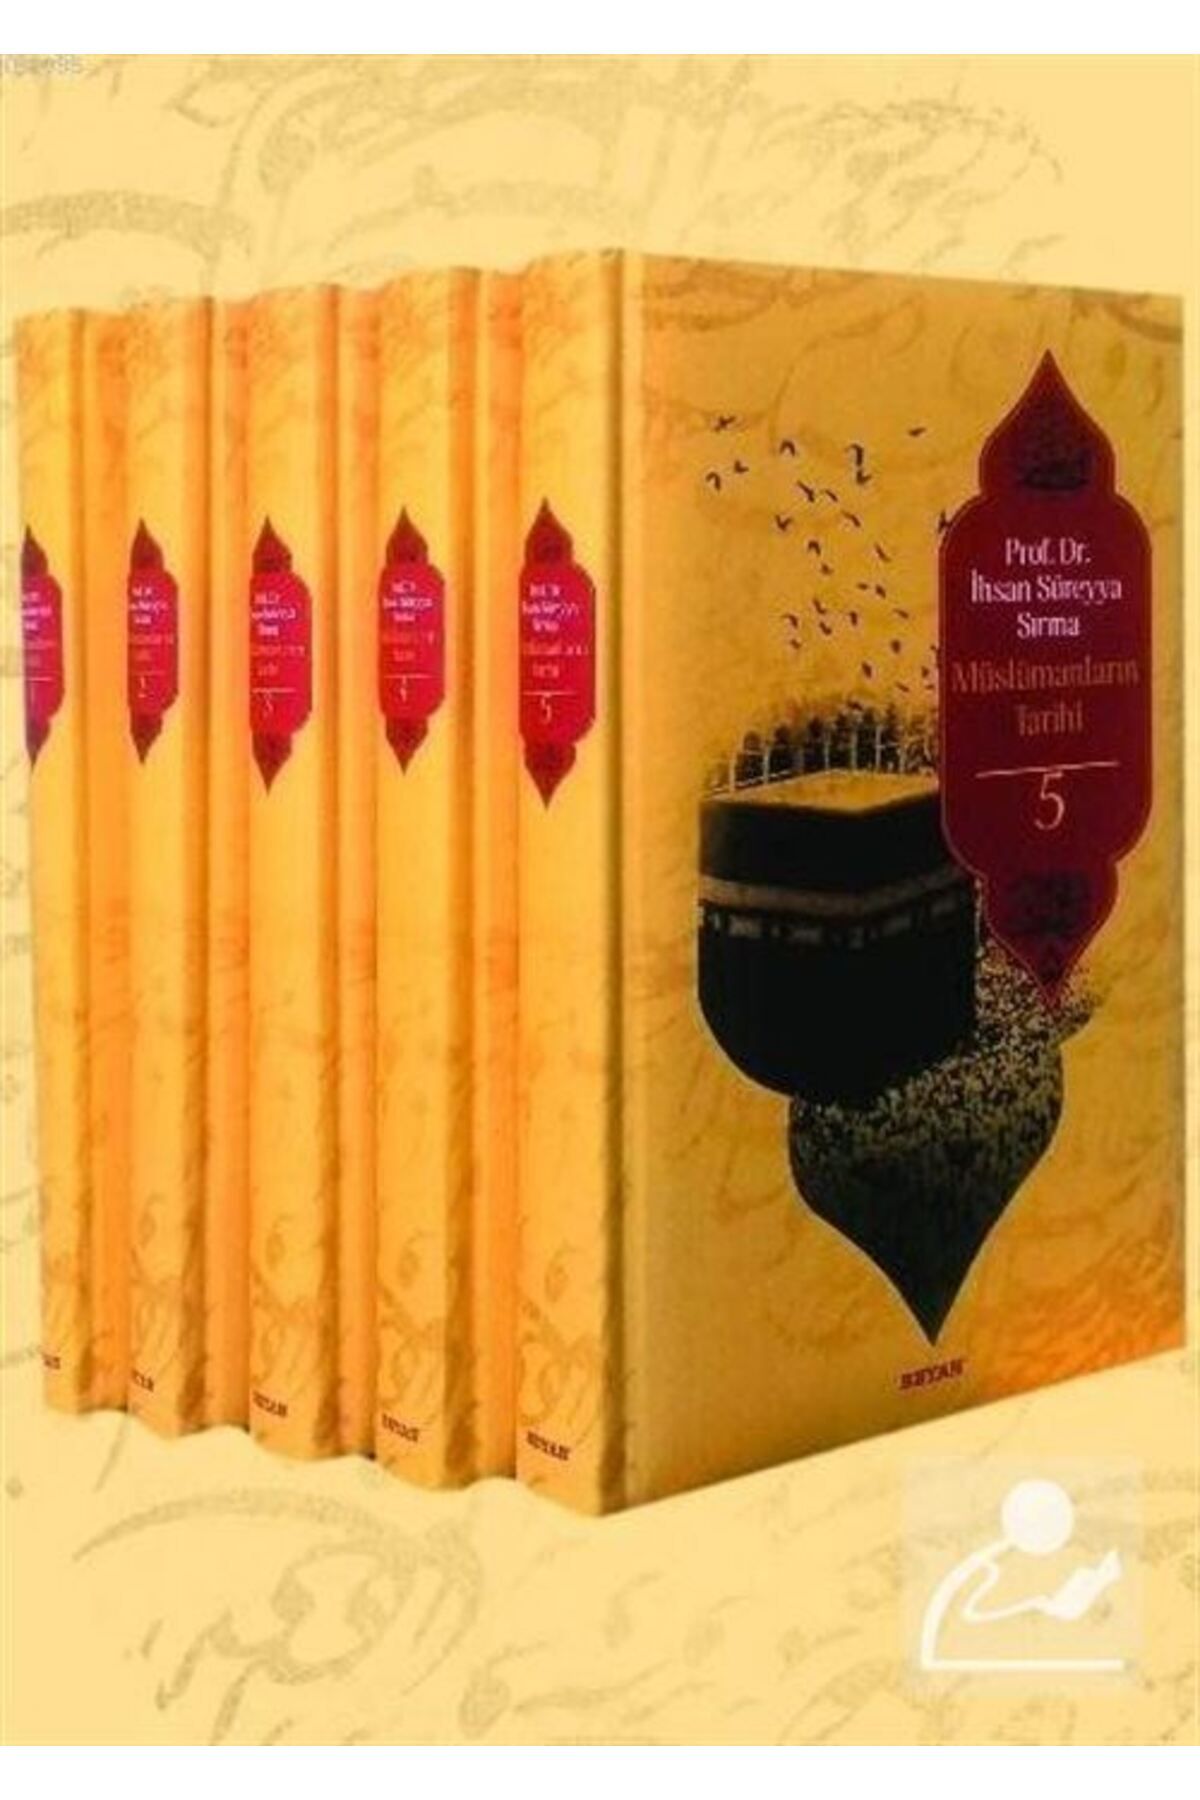 Beyan Yayınları Müslümanların Tarihi (5 CİLT TAKIM) Ihsan Süreyya Sırma - Ihsan Süreyya Sırma